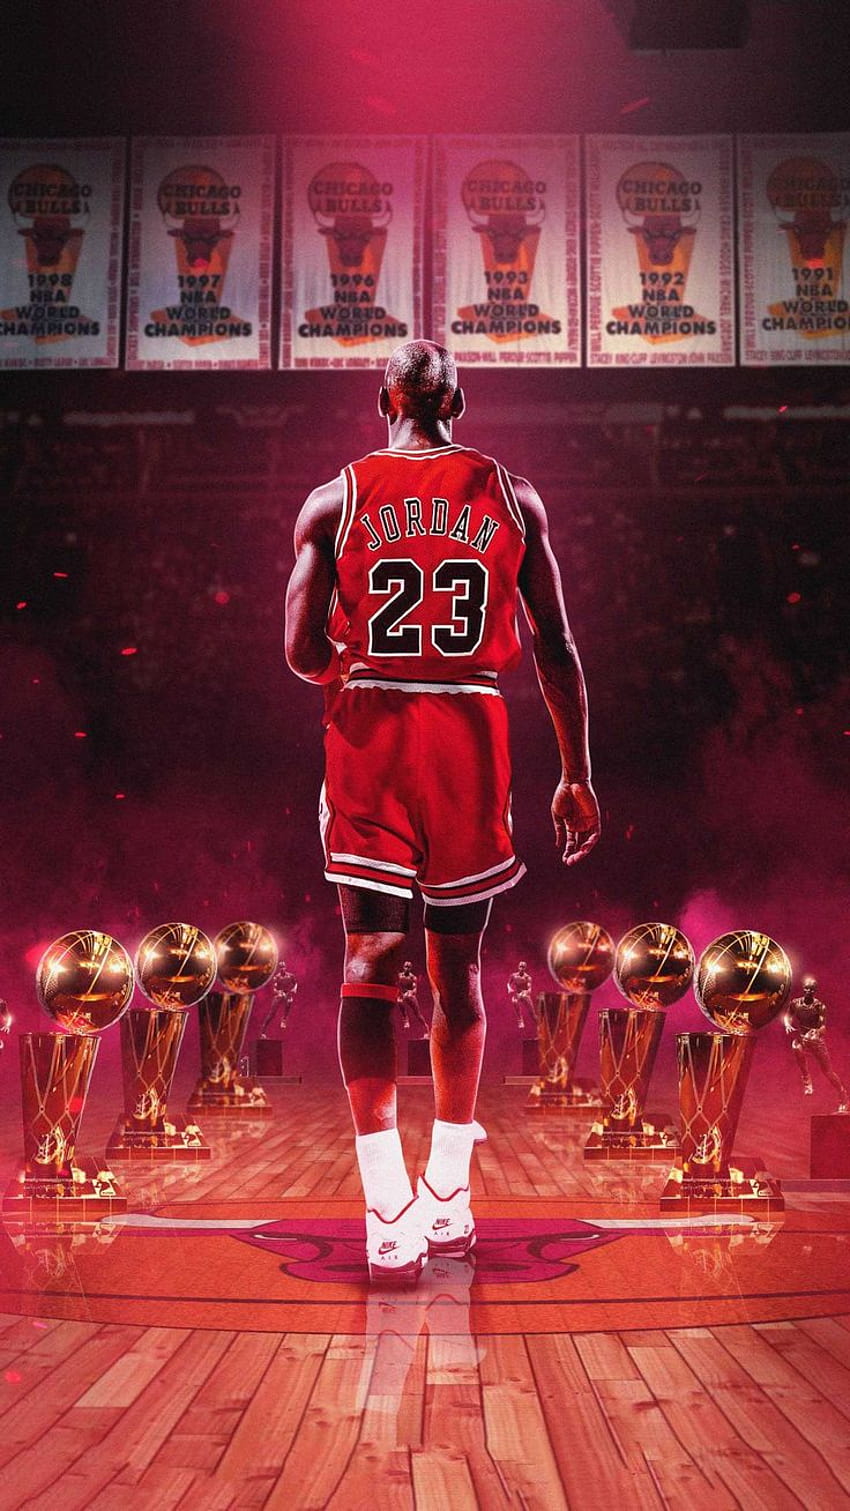 HD wallpaper: Chicago Bulls jersey, NBA, basketball, sports, Michael Jordan